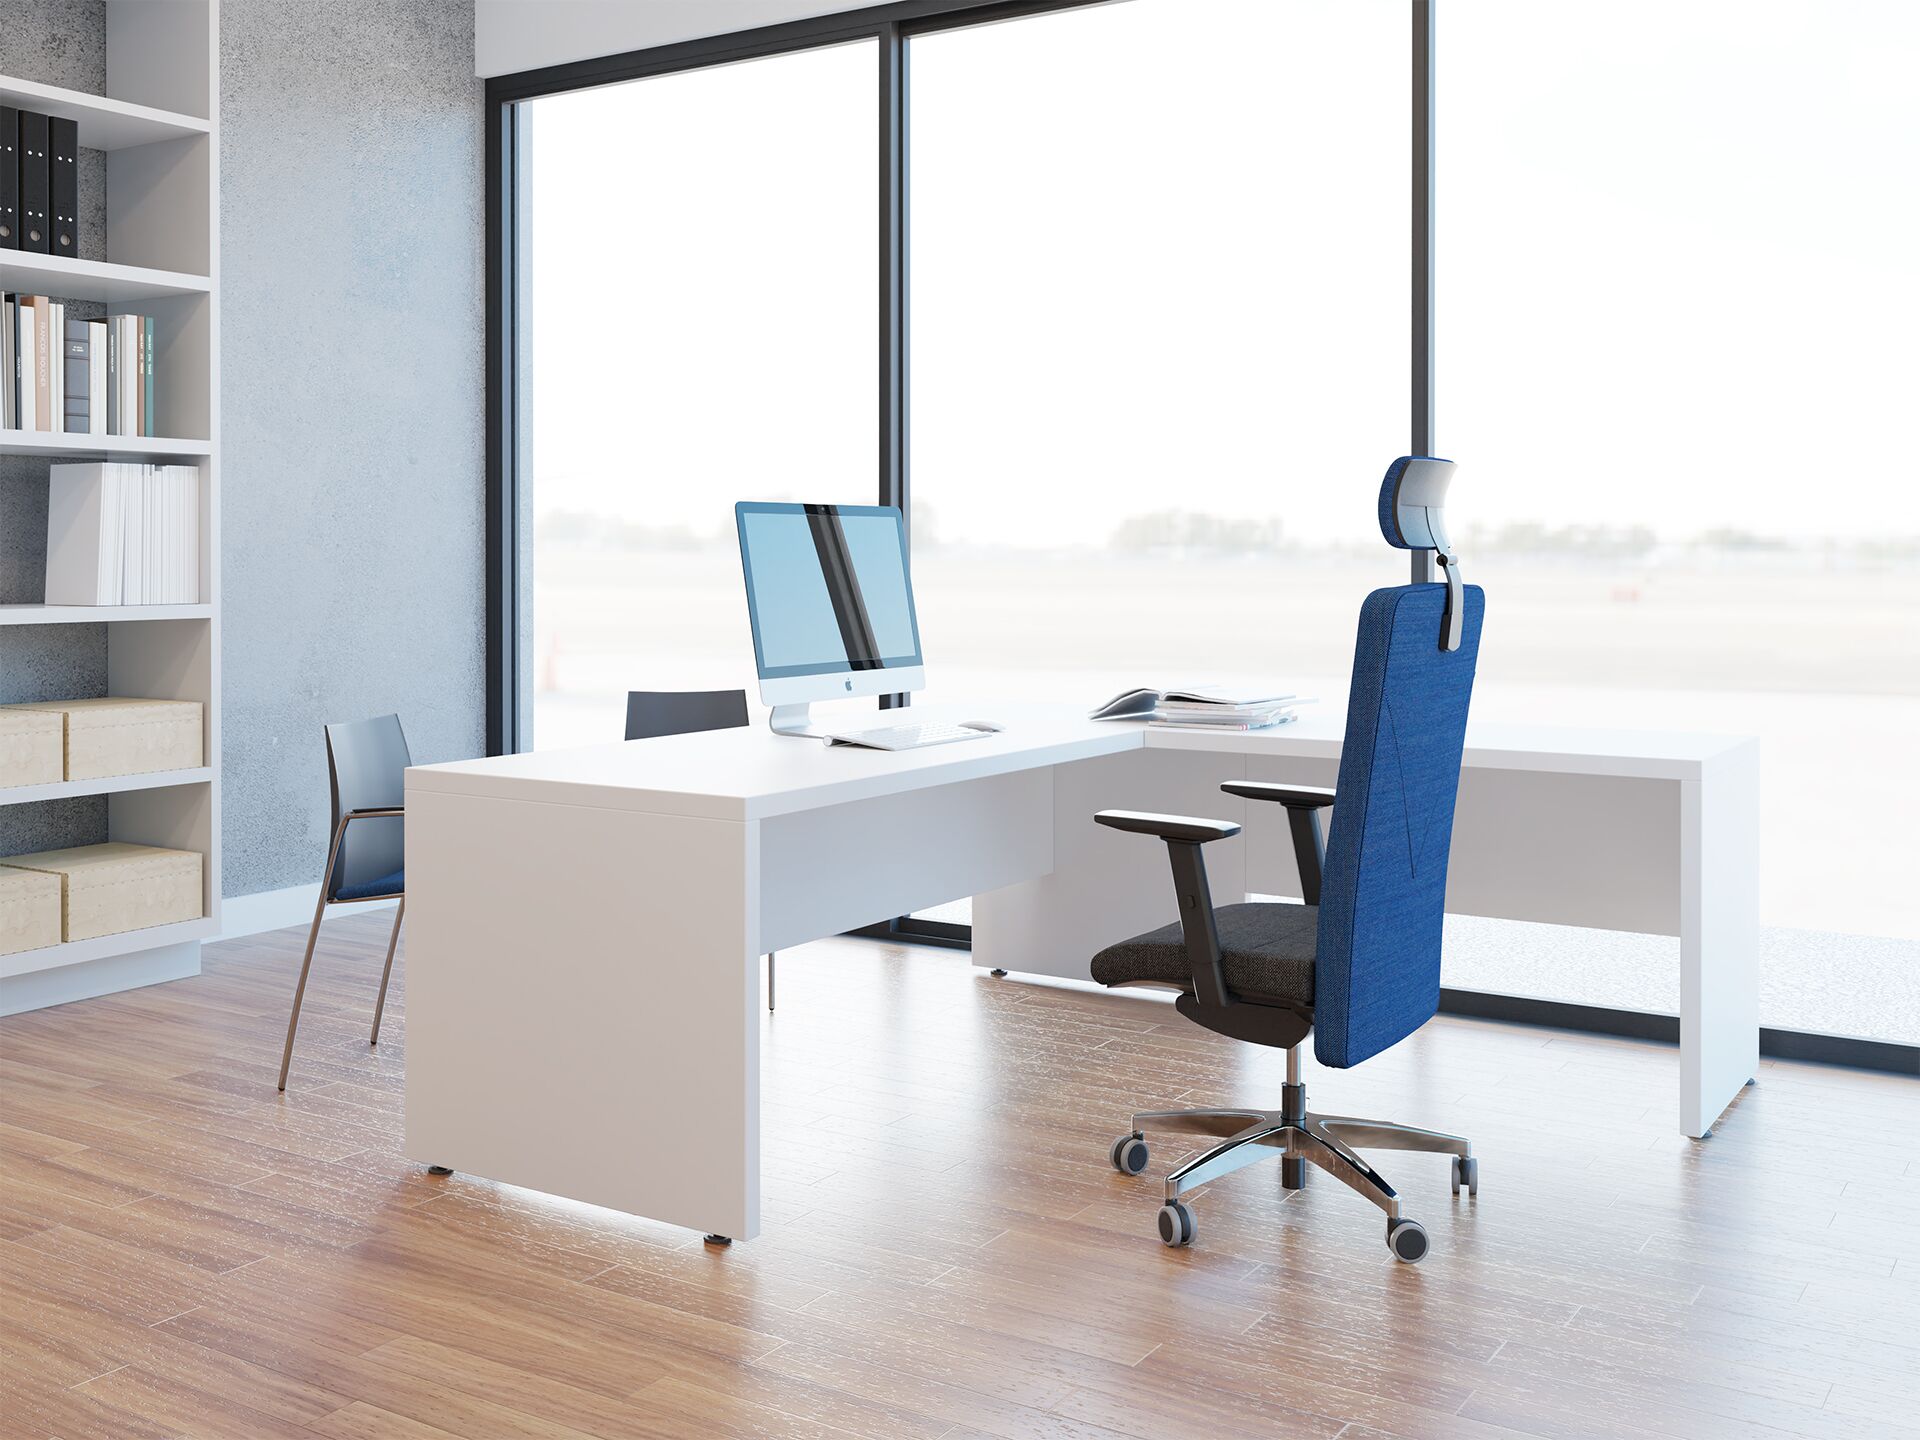 Pomieszczenie biurowe z fotelem biurowym foxtrot tango niebiesko czarnym oraz krzesłami biurowymi - widoczne od tyłu fotela